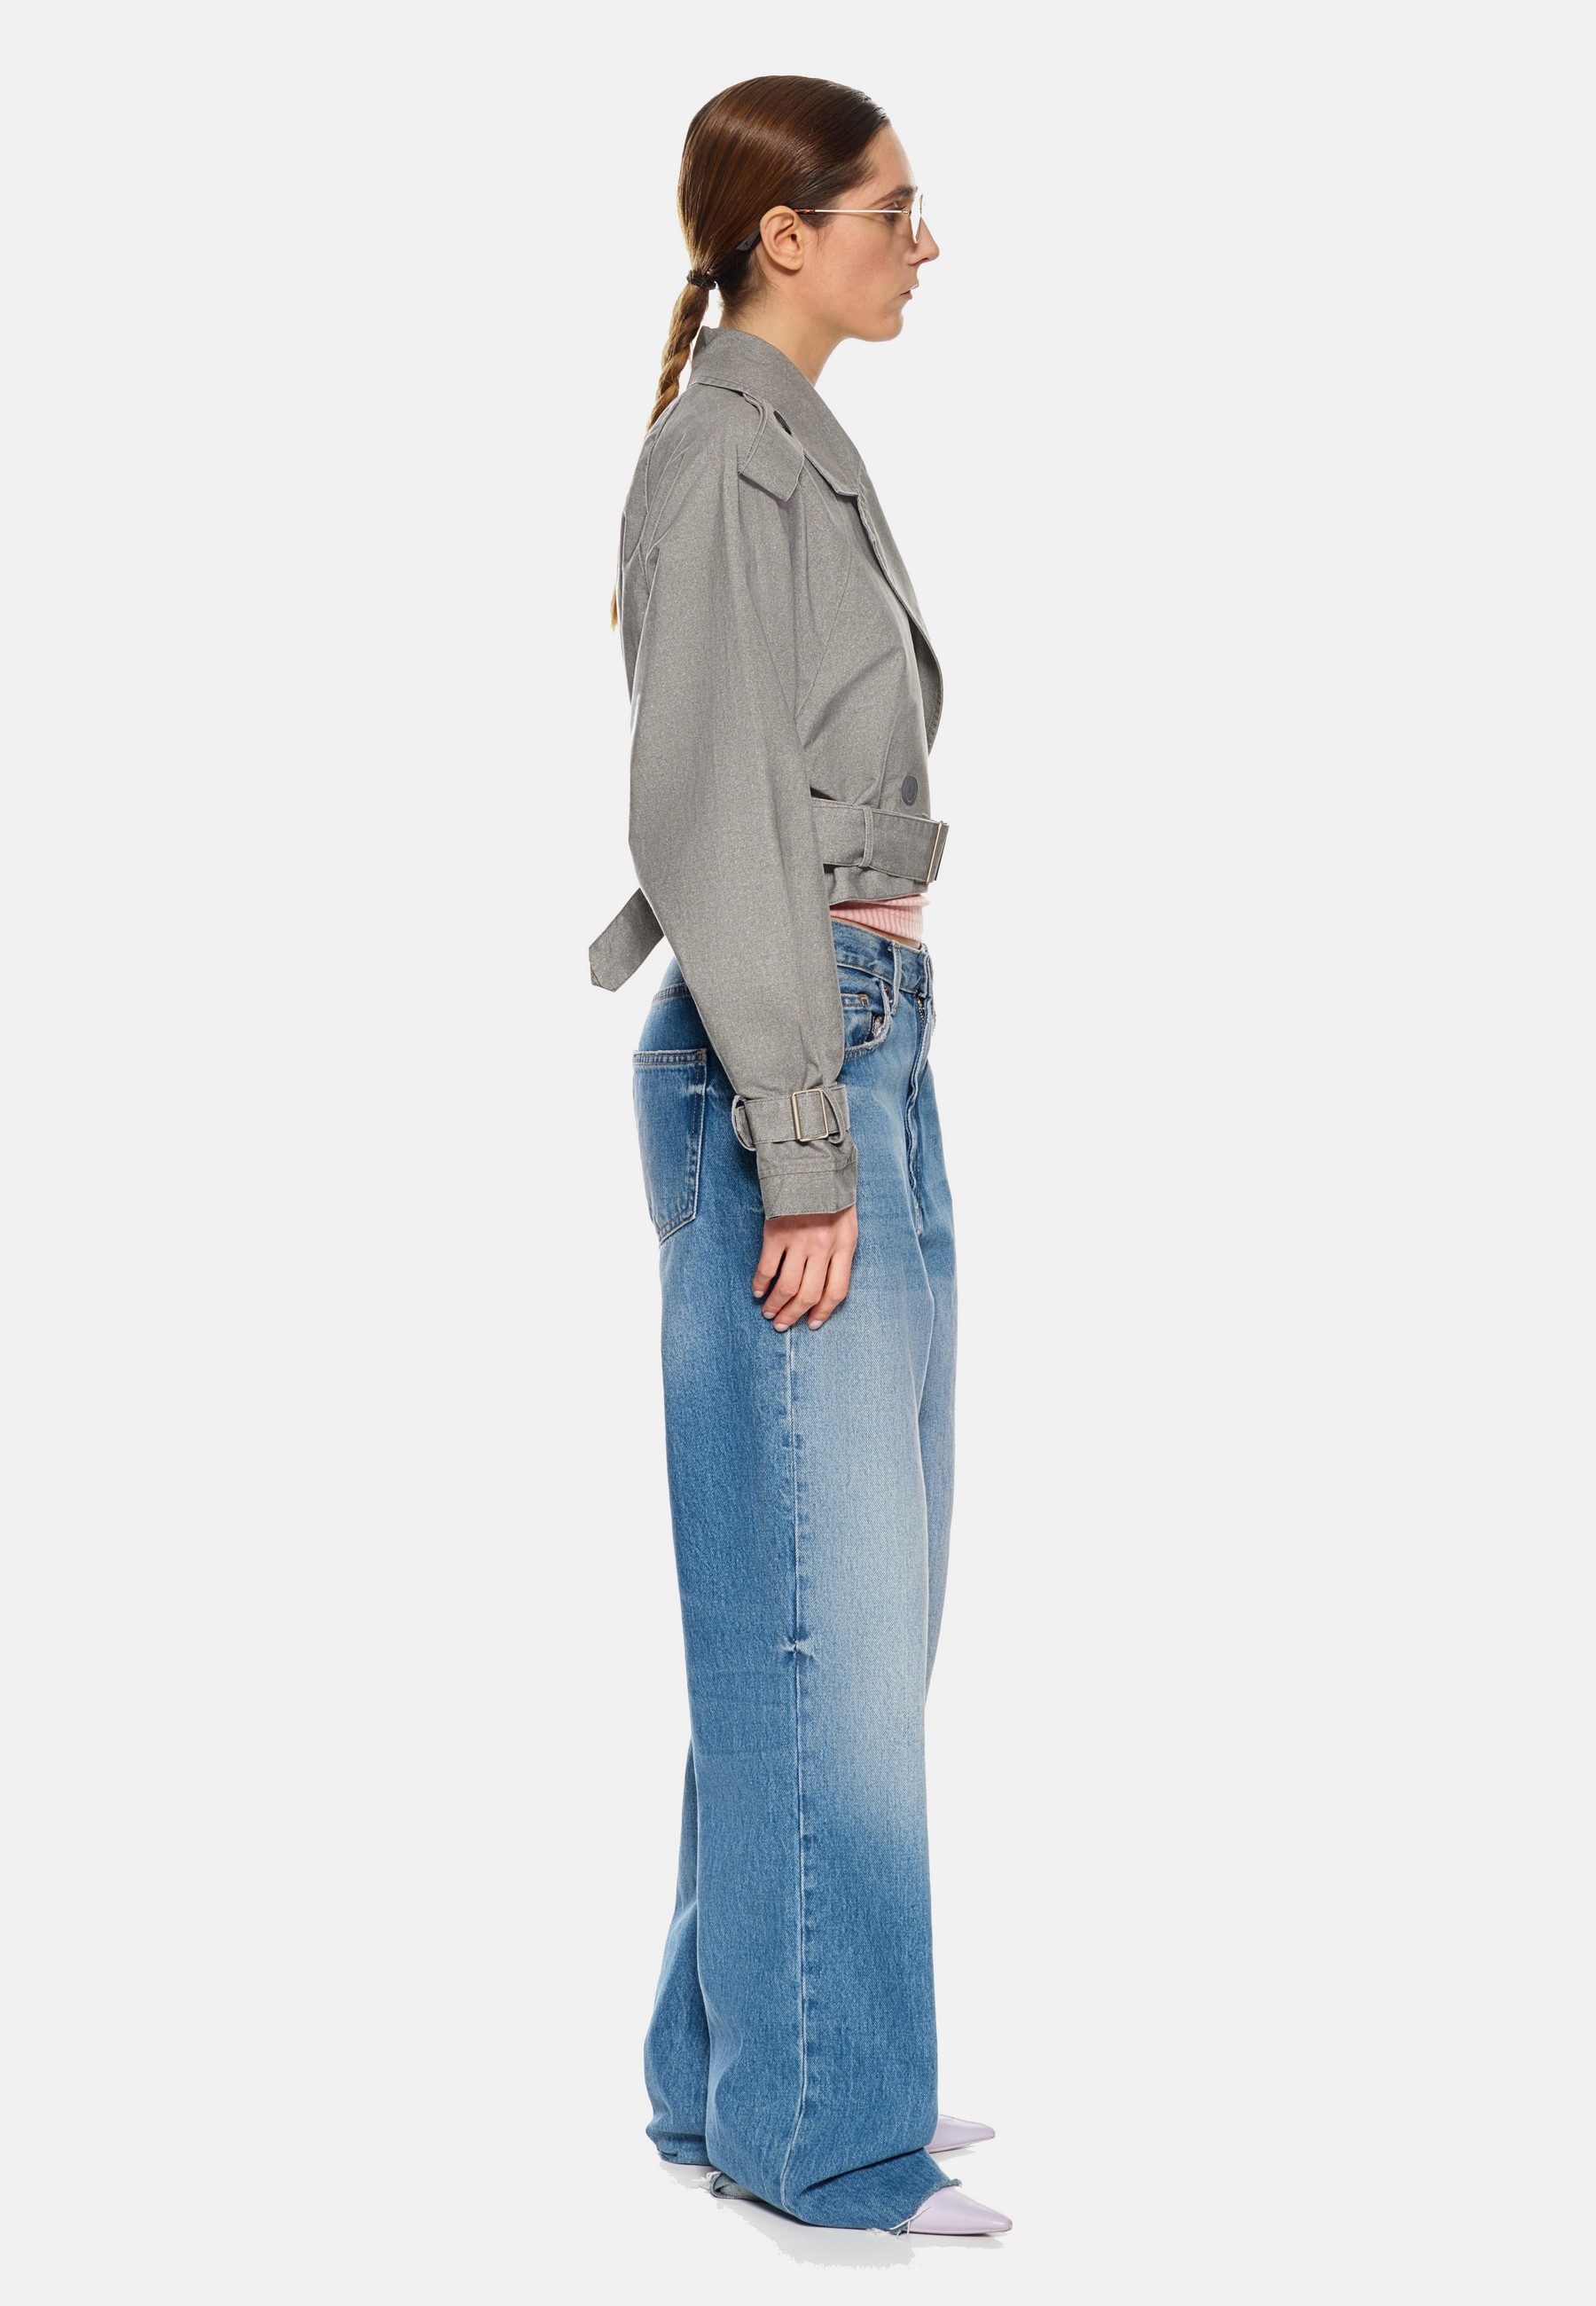 Damen Textil Jacke Elvira in Grau von Ricano - Vollansicht am Model